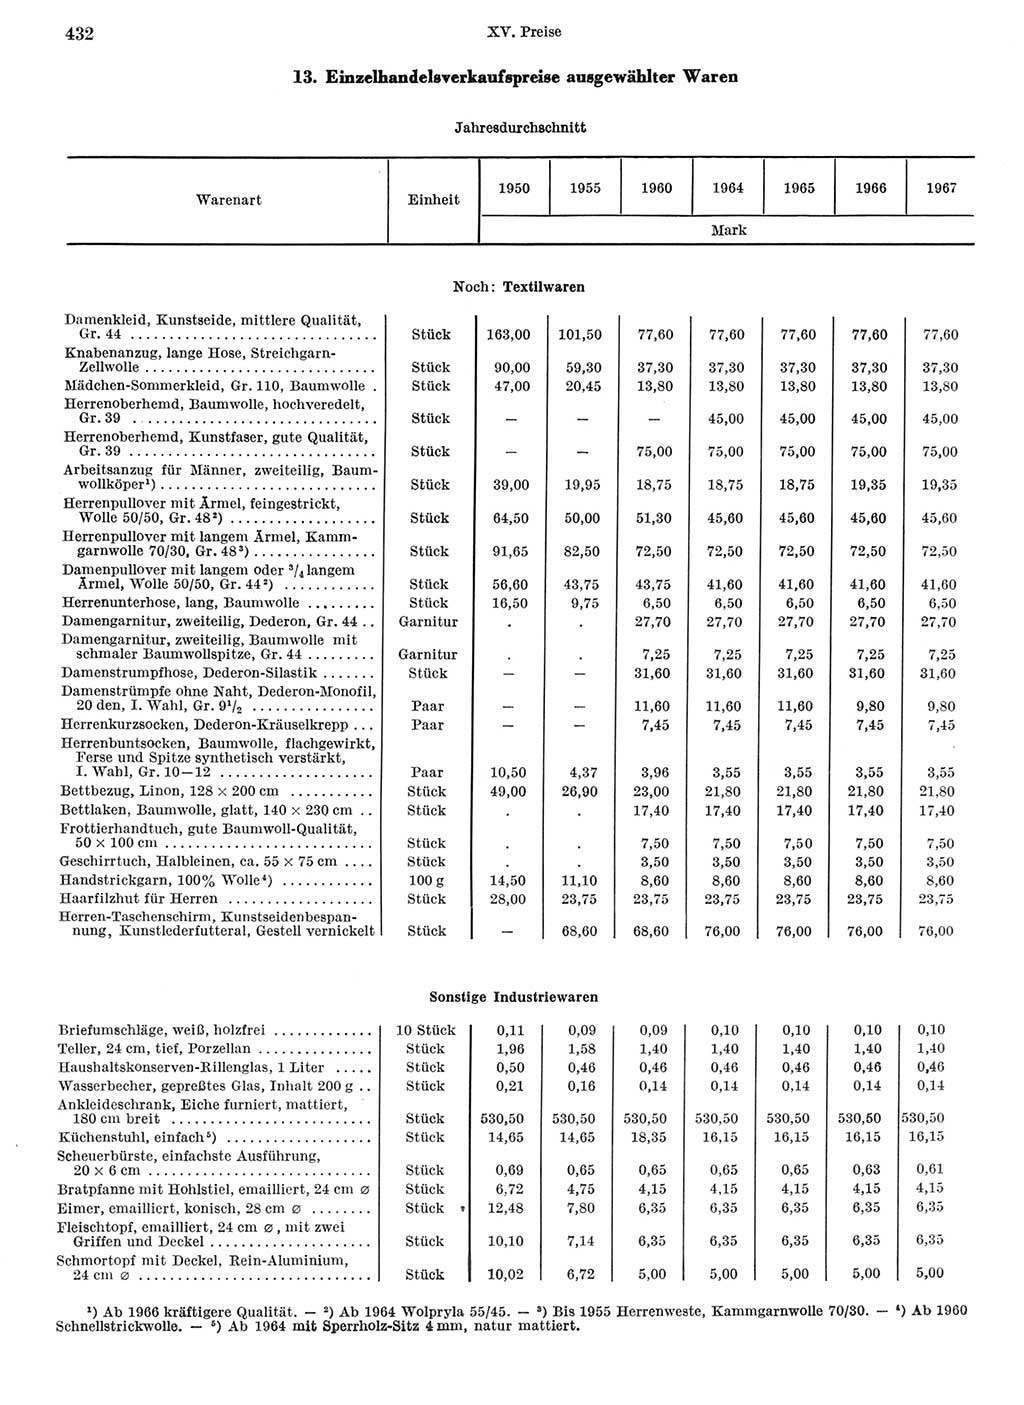 Statistisches Jahrbuch der Deutschen Demokratischen Republik (DDR) 1968, Seite 432 (Stat. Jb. DDR 1968, S. 432)